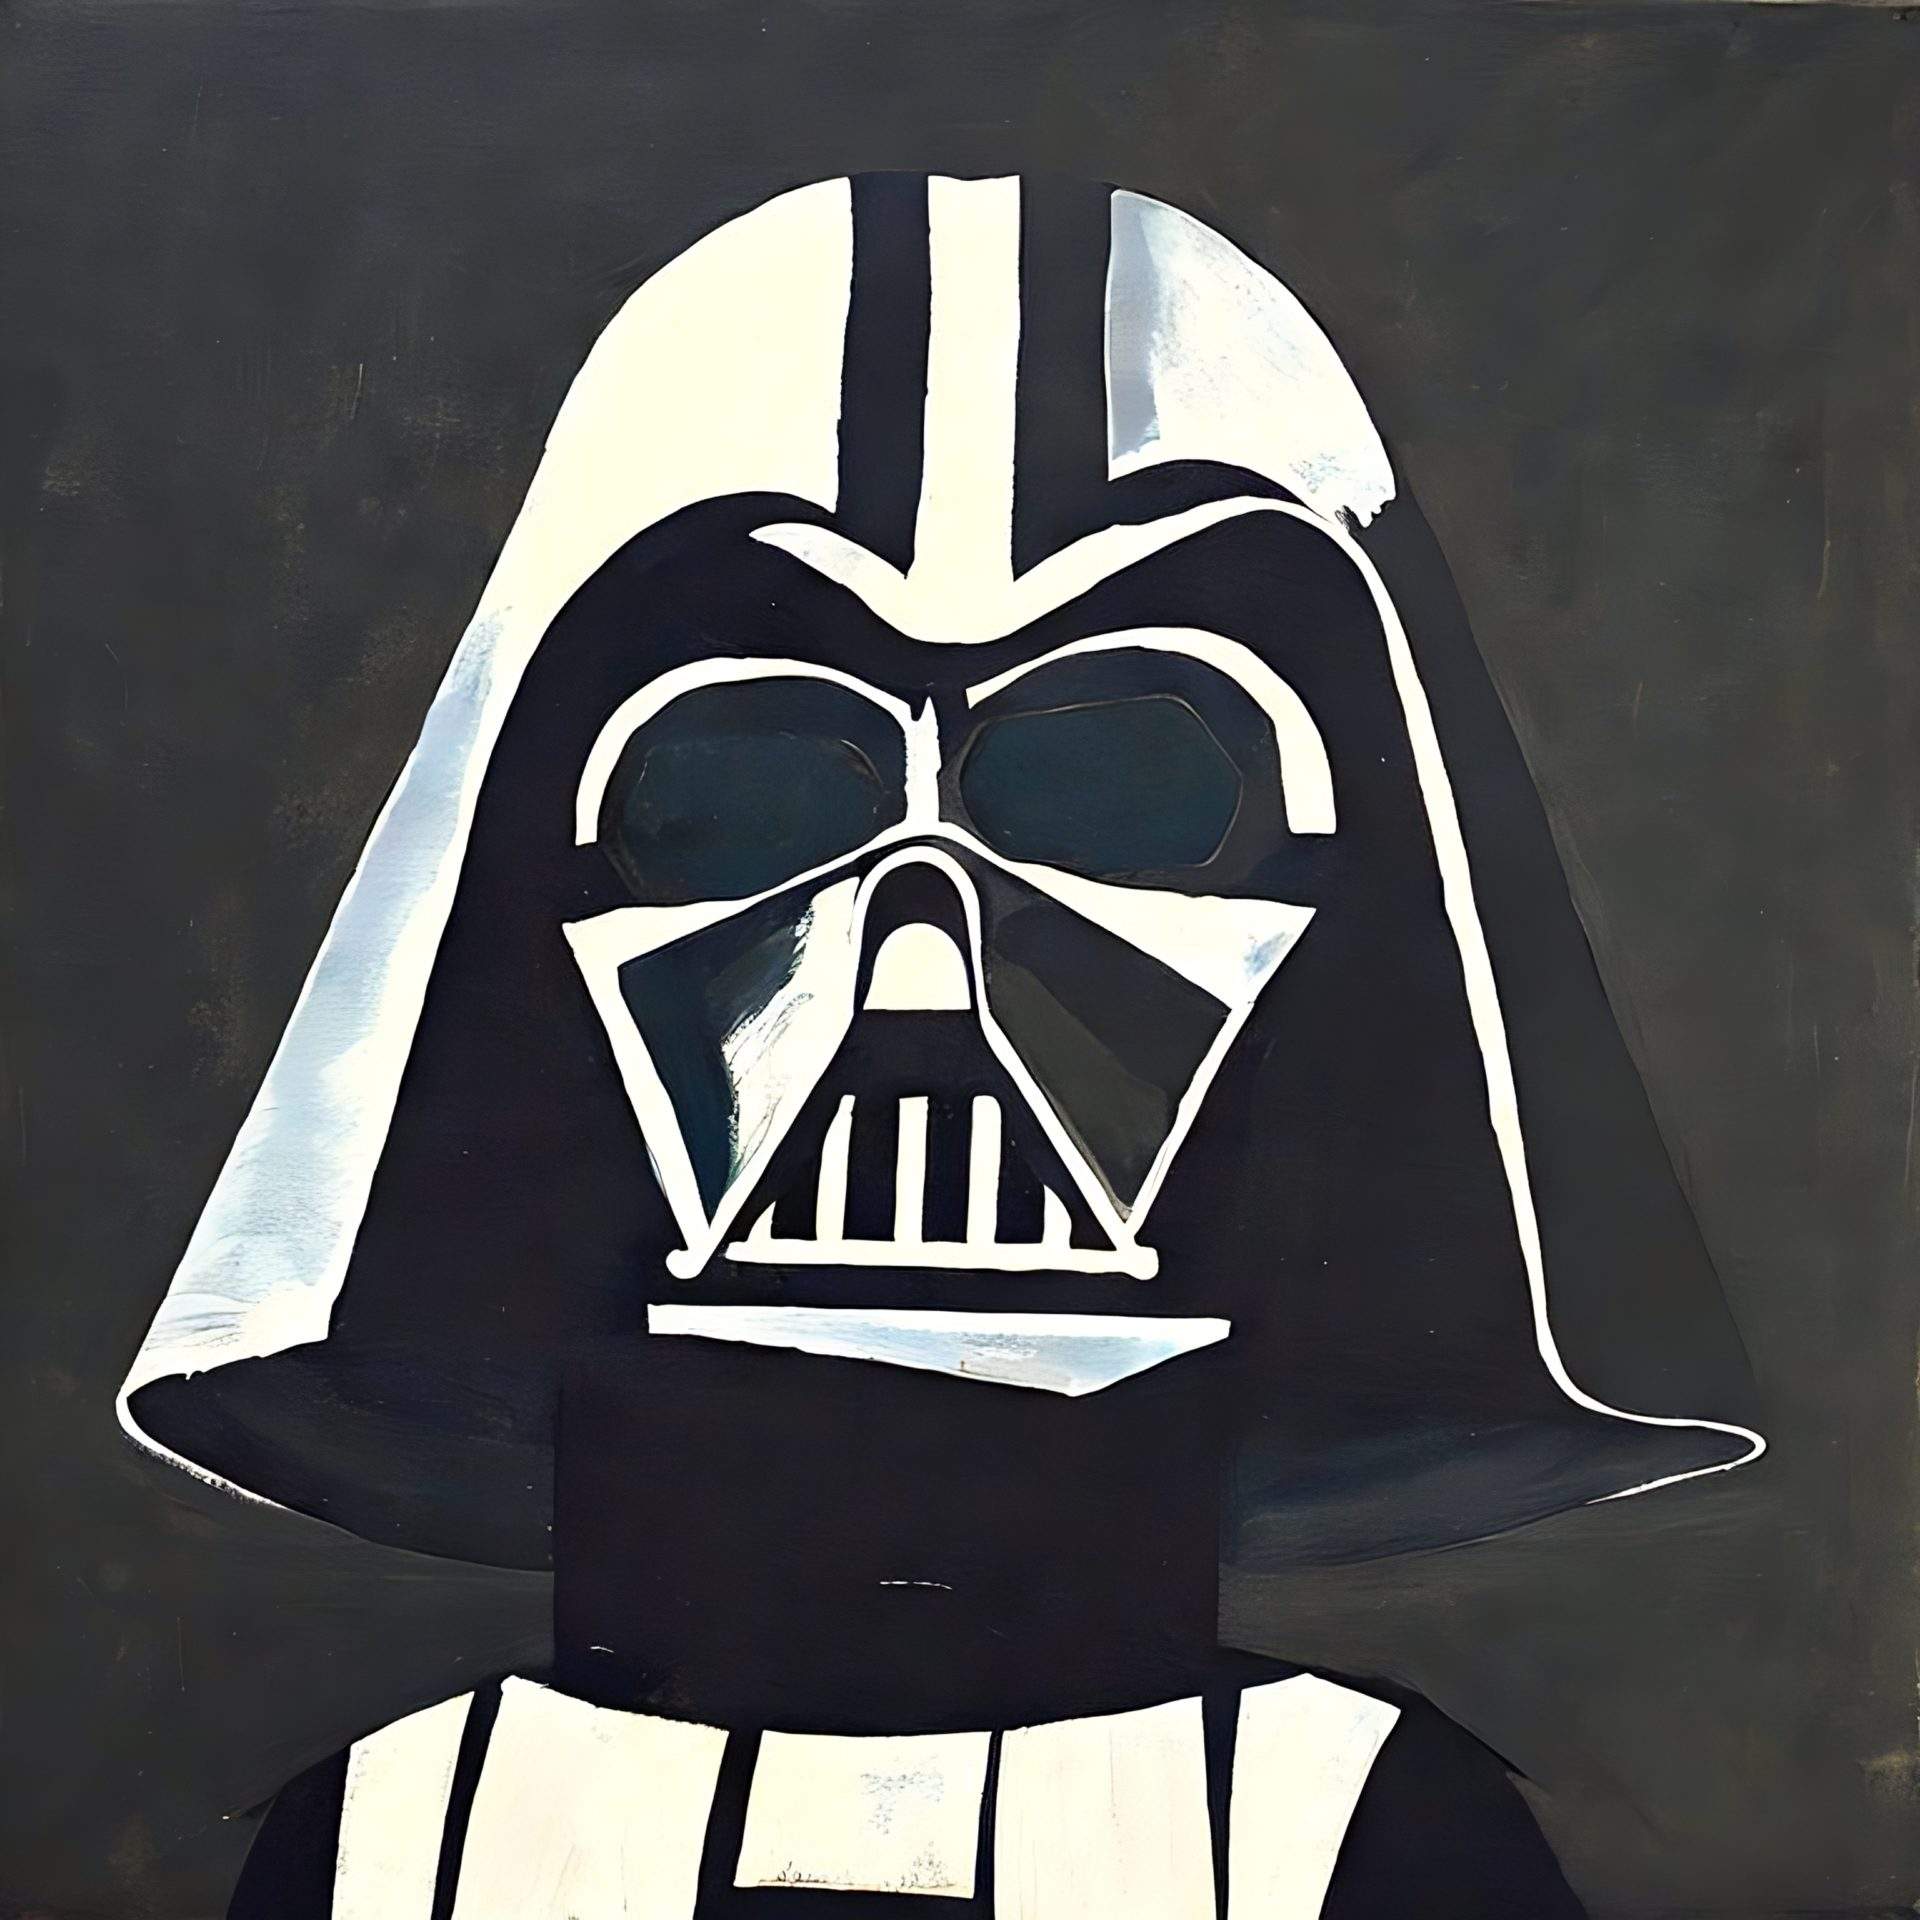 Brutally honest depiction of Darth Vader